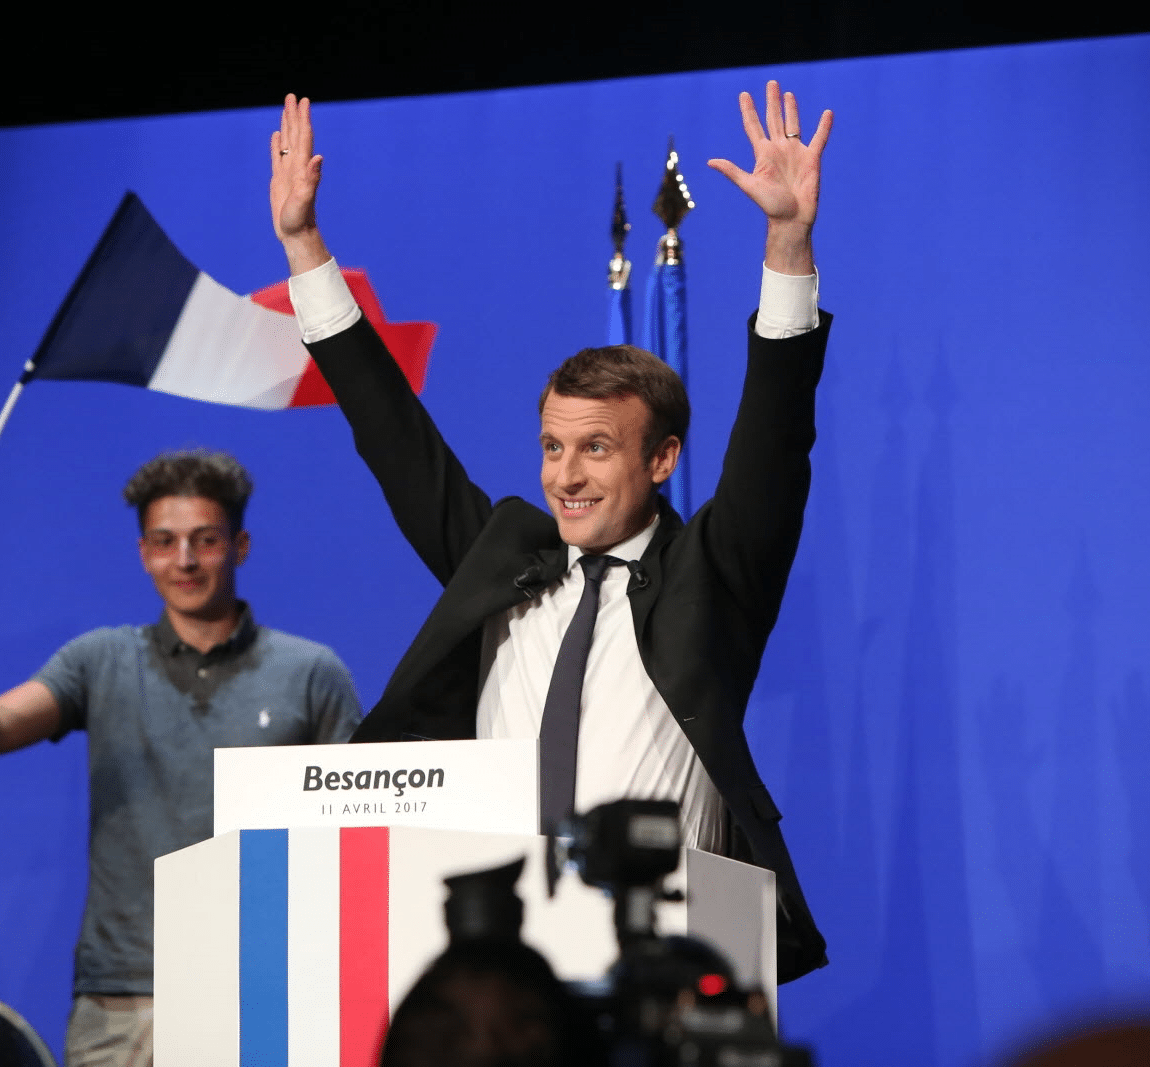 https://fr.wikipedia.org/wiki/Fichier:Emmanuel_Macron_en_meeting_à_Besançon.png